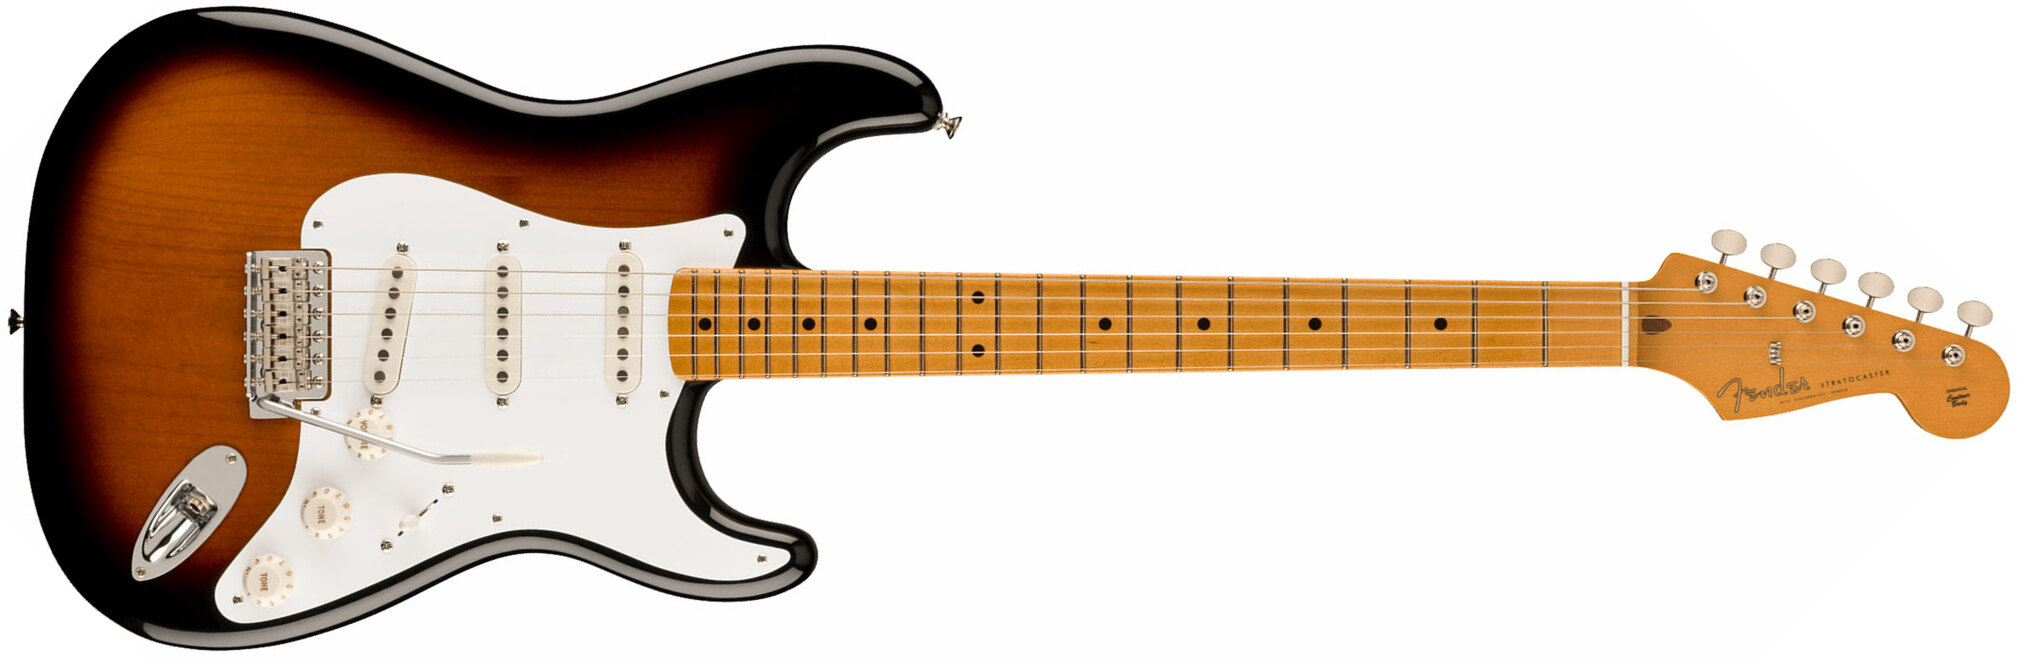 Fender Strat 50s Vintera 2 Mex 3s Trem Mn - 2-color Sunburst - Guitarra eléctrica con forma de str. - Main picture